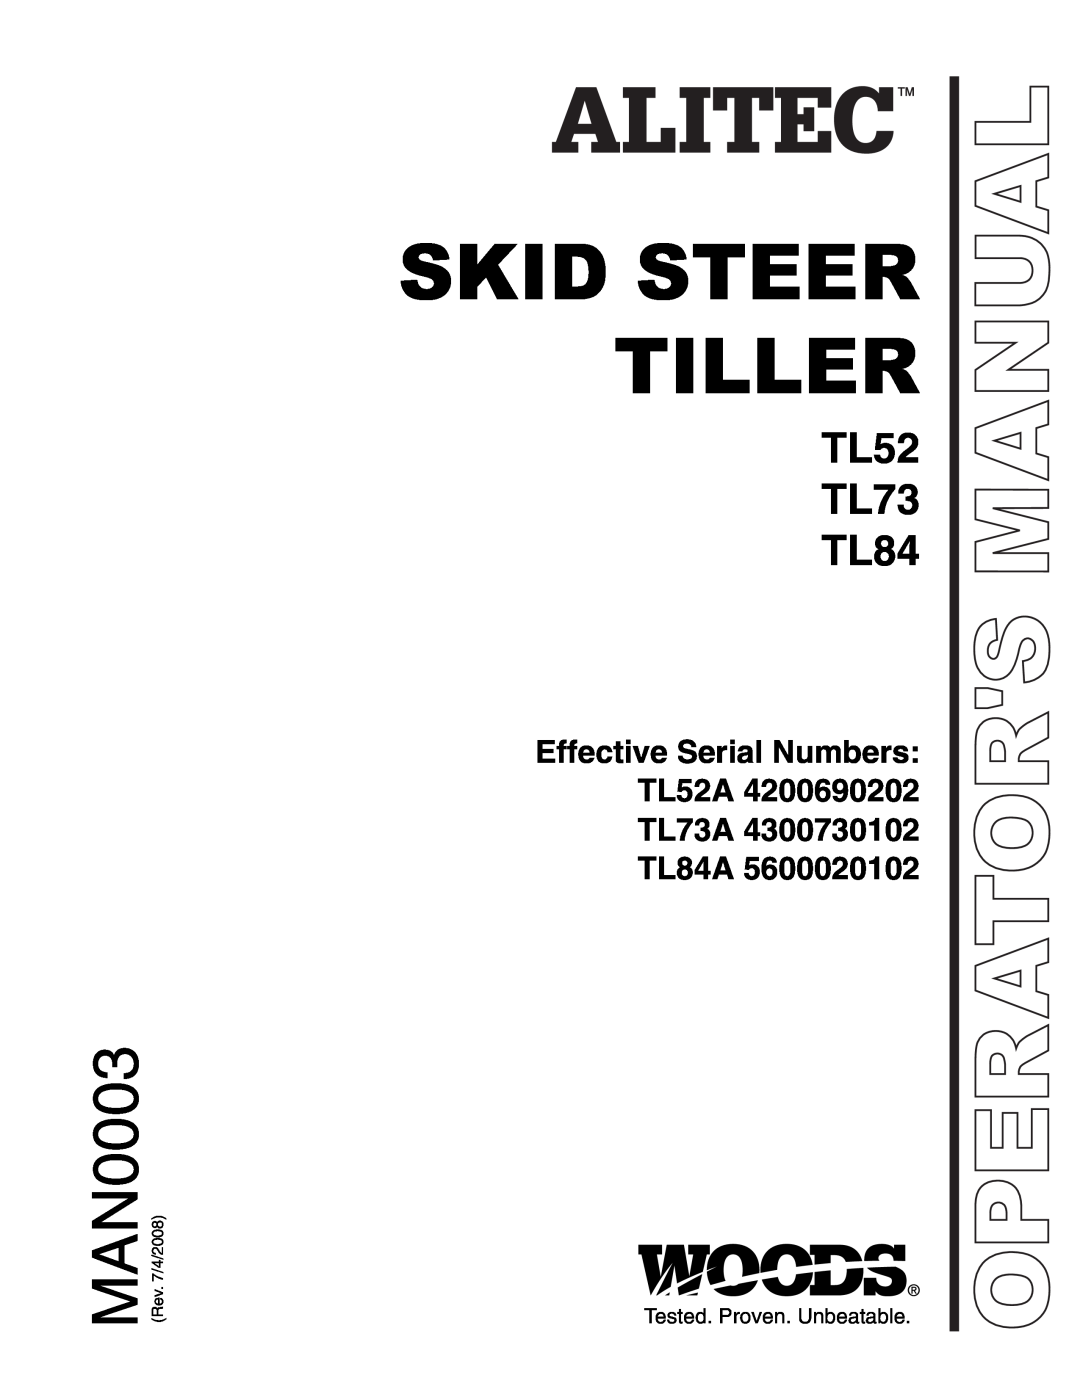 Woods Equipment manual Effective Serial Numbers TL52A TL73A TL84A, Skid Steer Tiller, MAN0003, TL52 TL73 TL84 